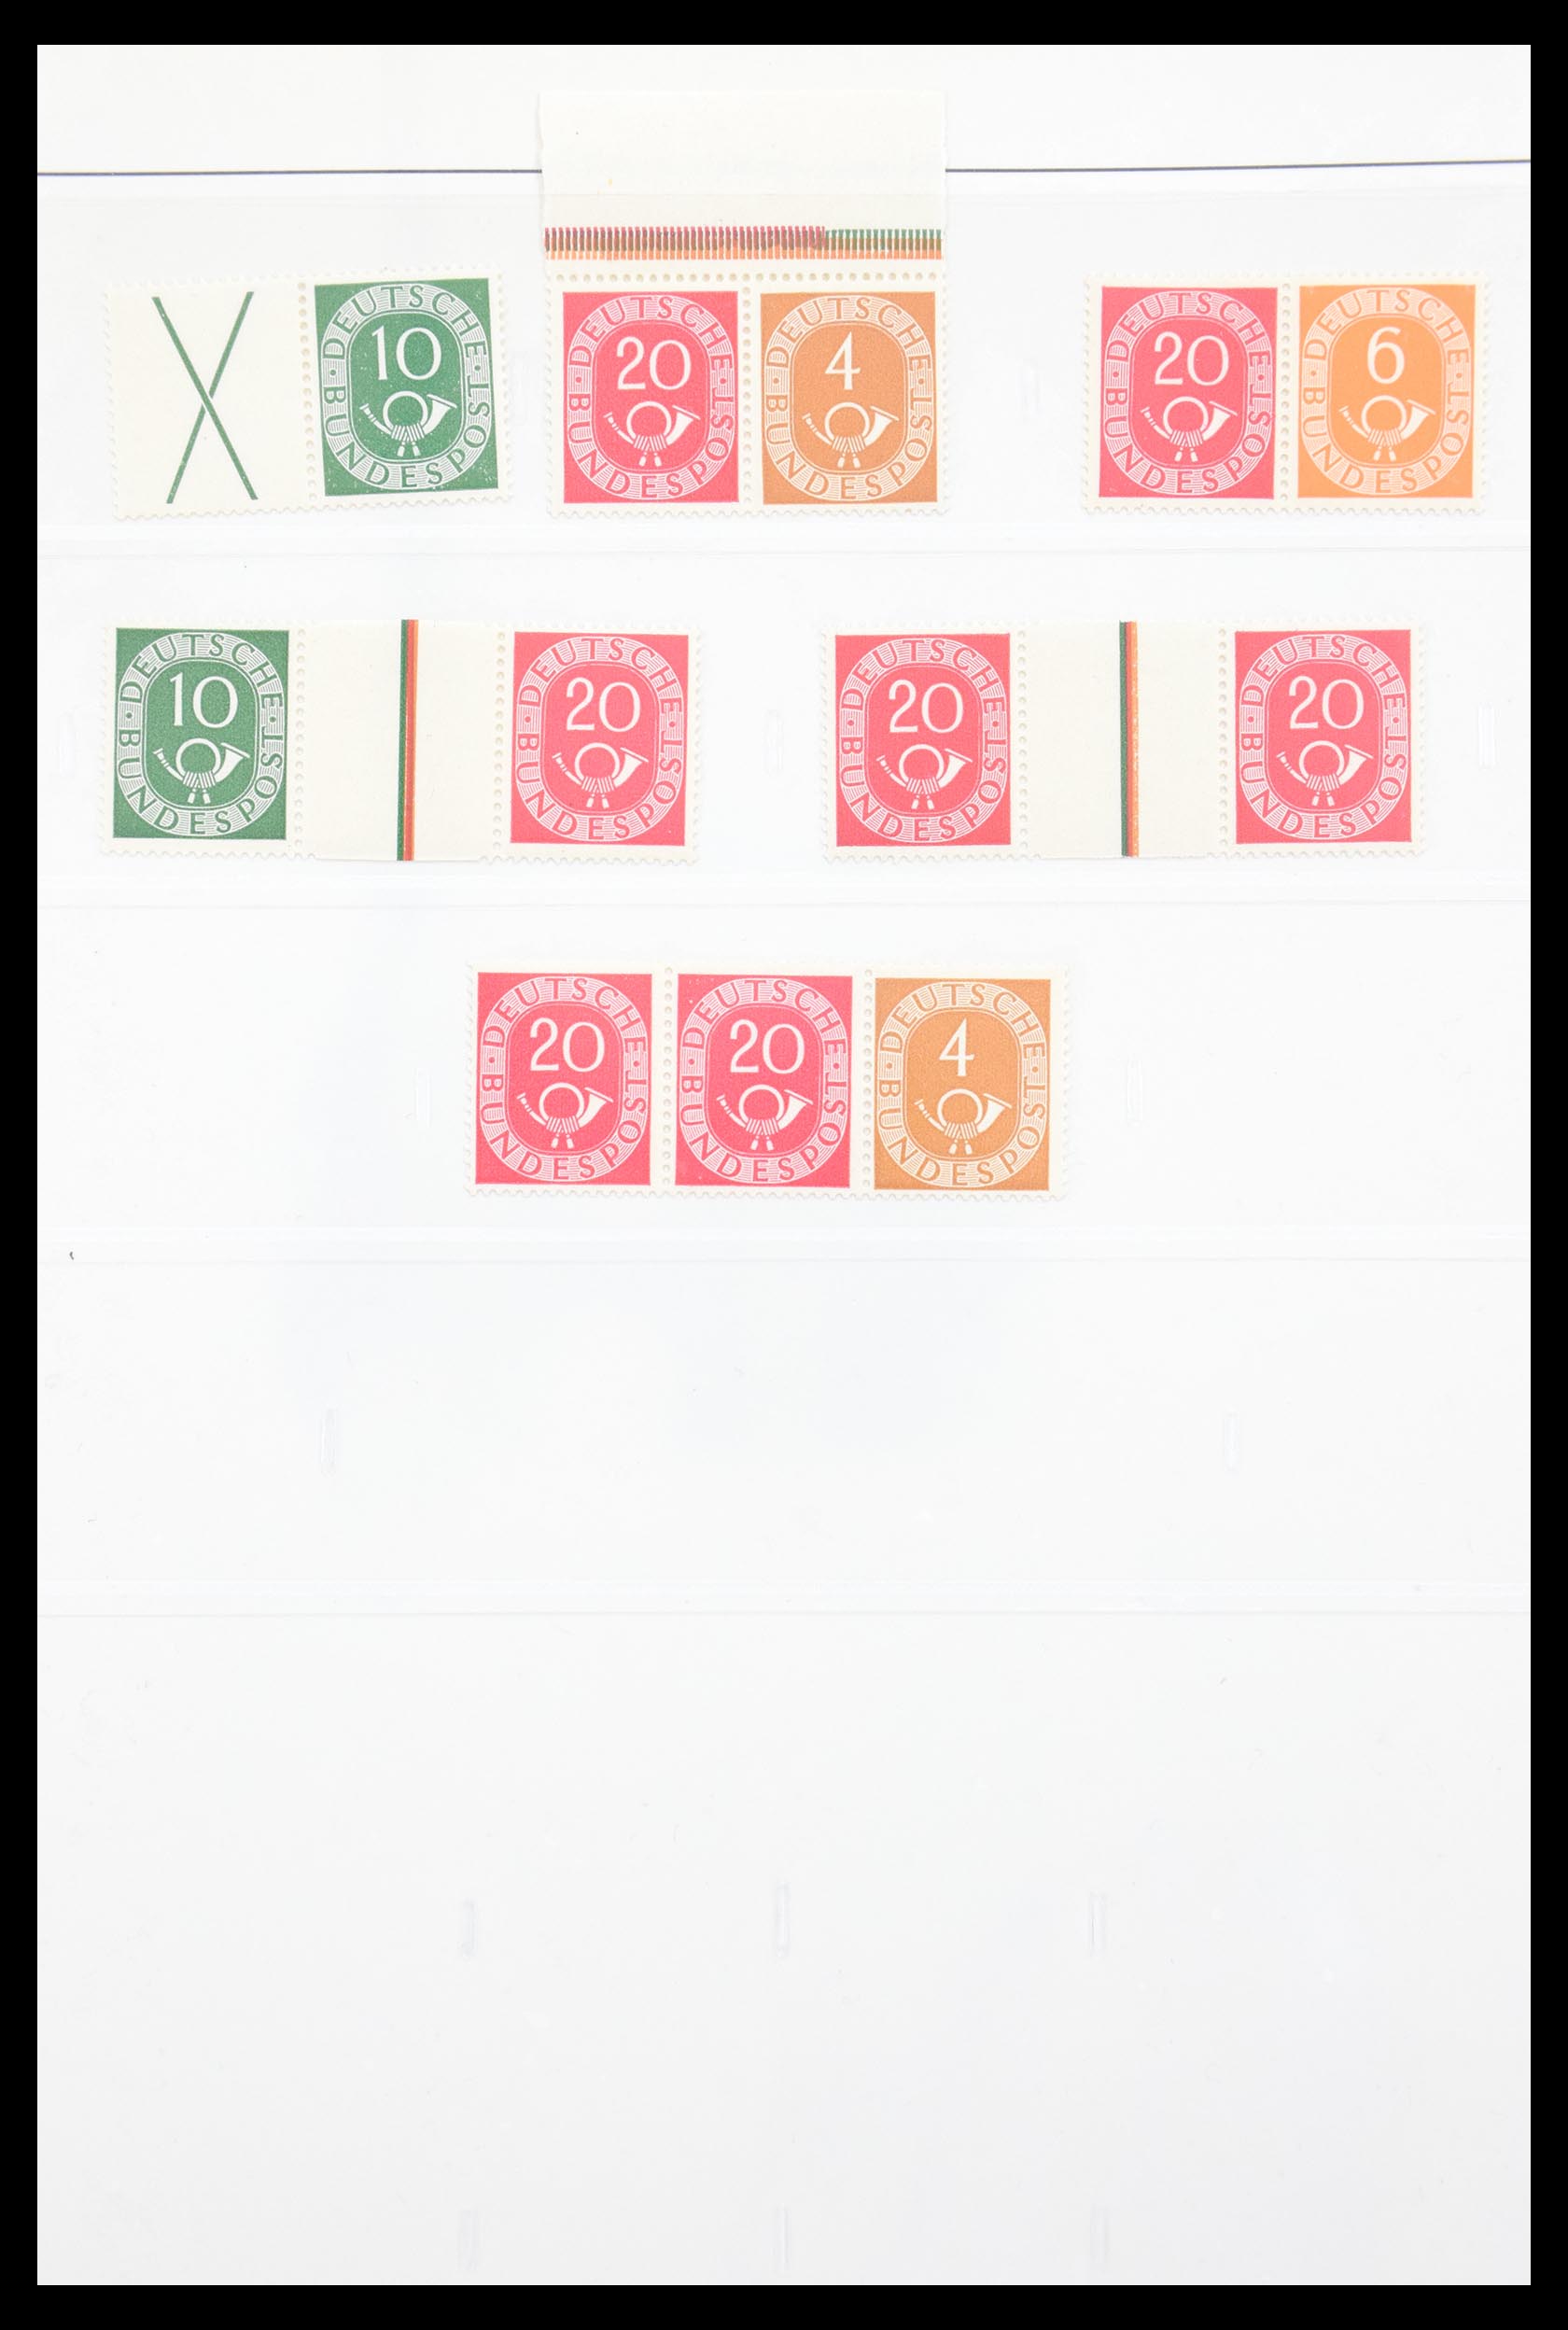 30605 001 - 30605 Bundespost combinaties 1951-1974.